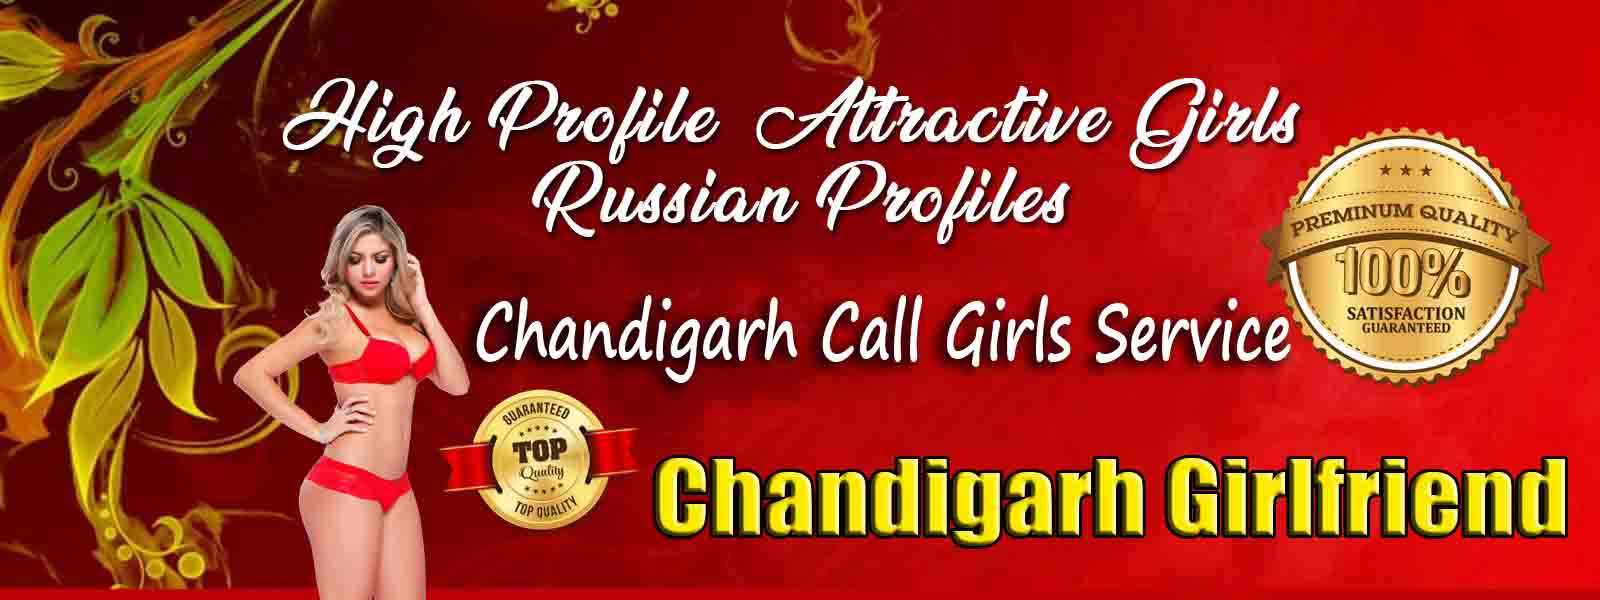 Chandigarh call girls service